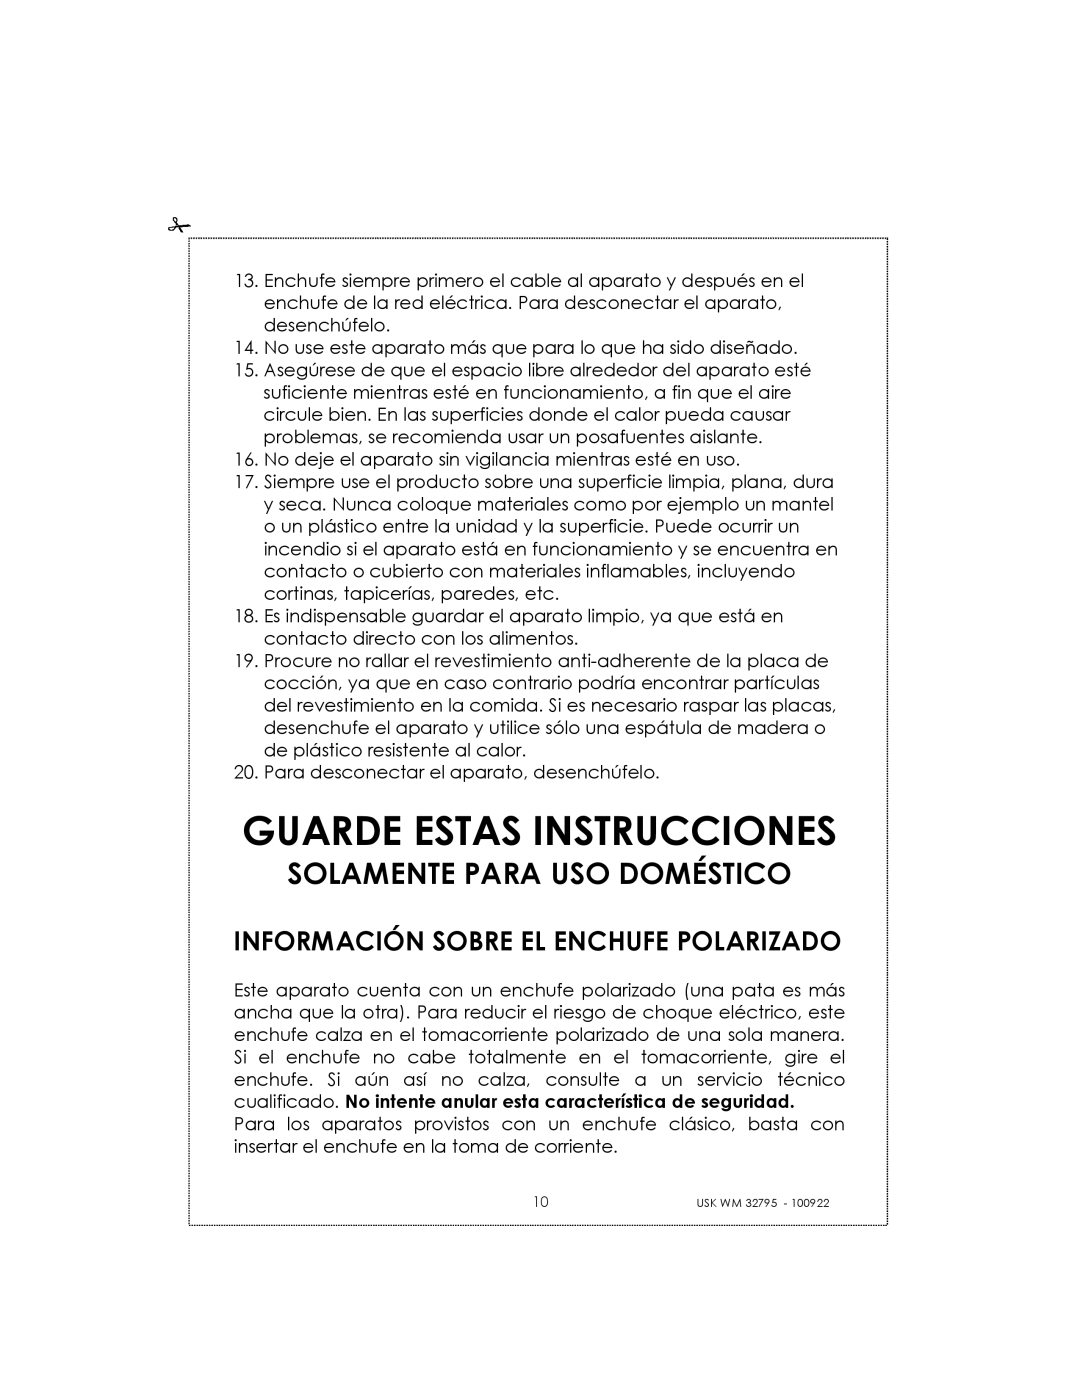 Kalorik USK WM 32795 Guarde Estas Instrucciones, Información Sobre El Enchufe Polarizado, Solamente Para Uso Doméstico 